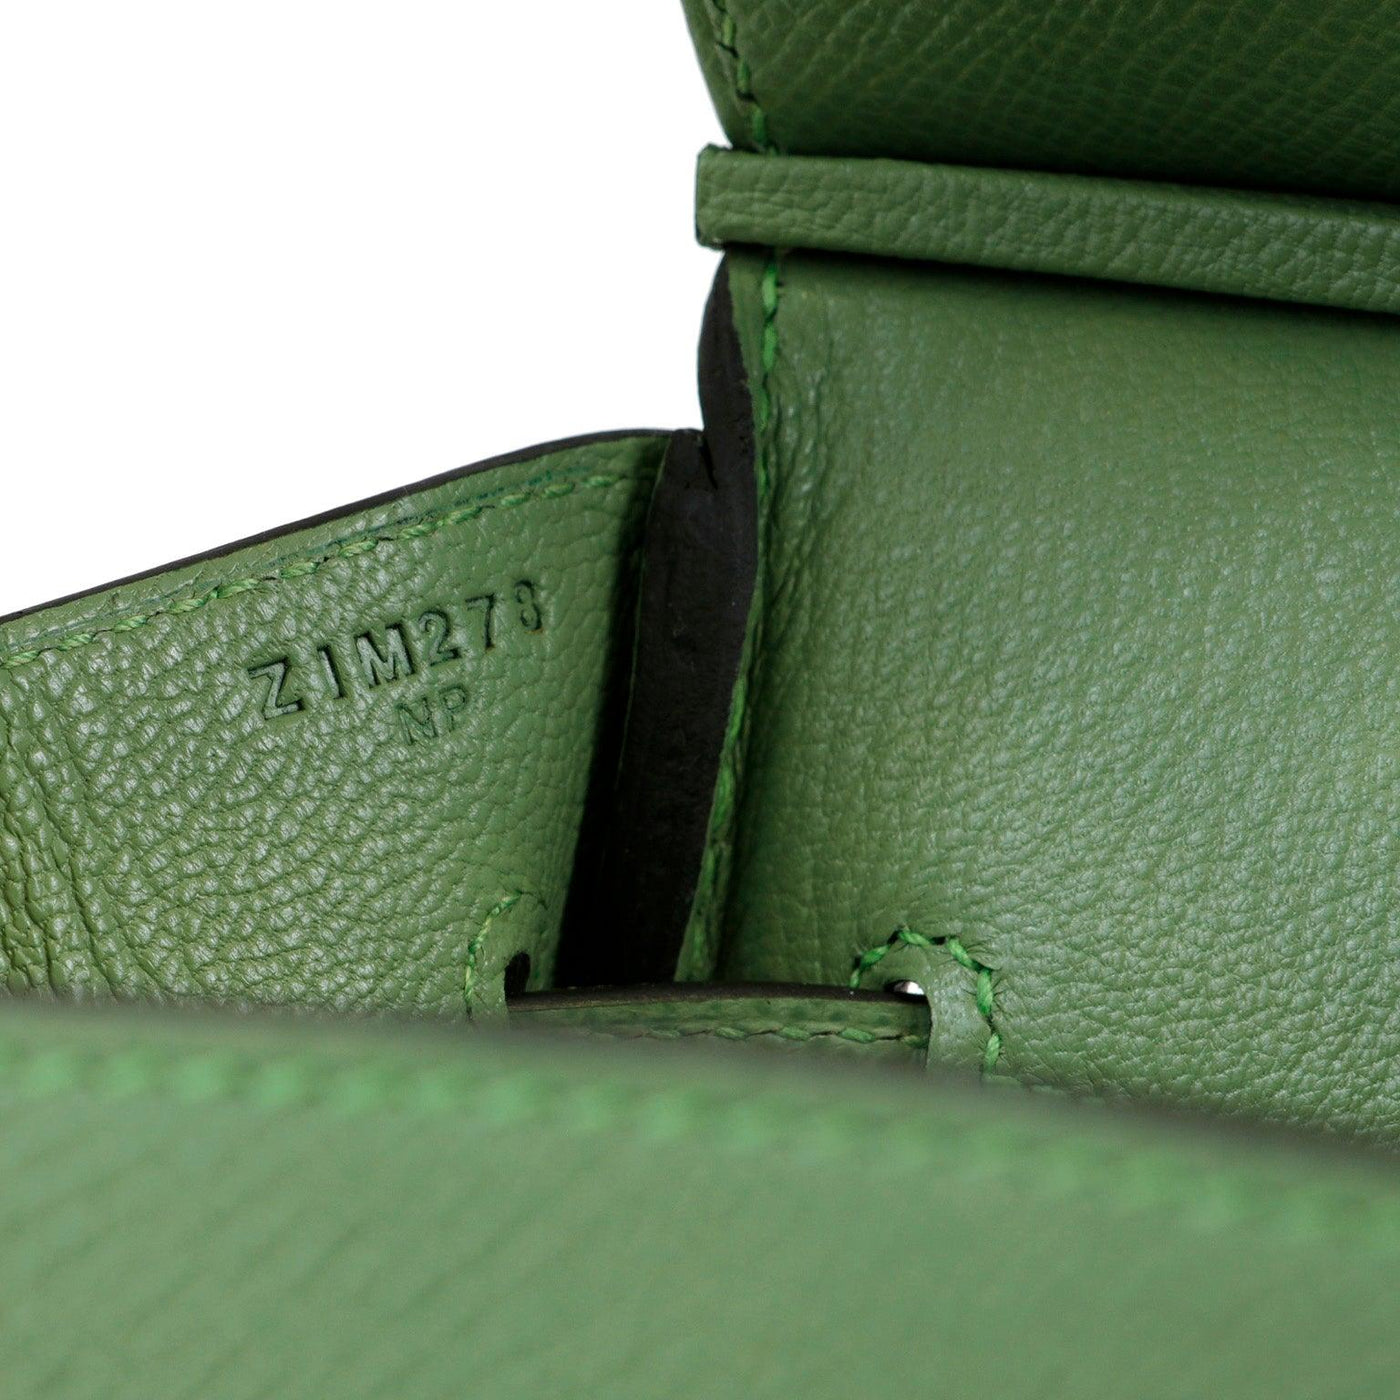 Hermès New 30cm Vert Criquet Epsom Birkin with Gold Hardware - Only Authentics